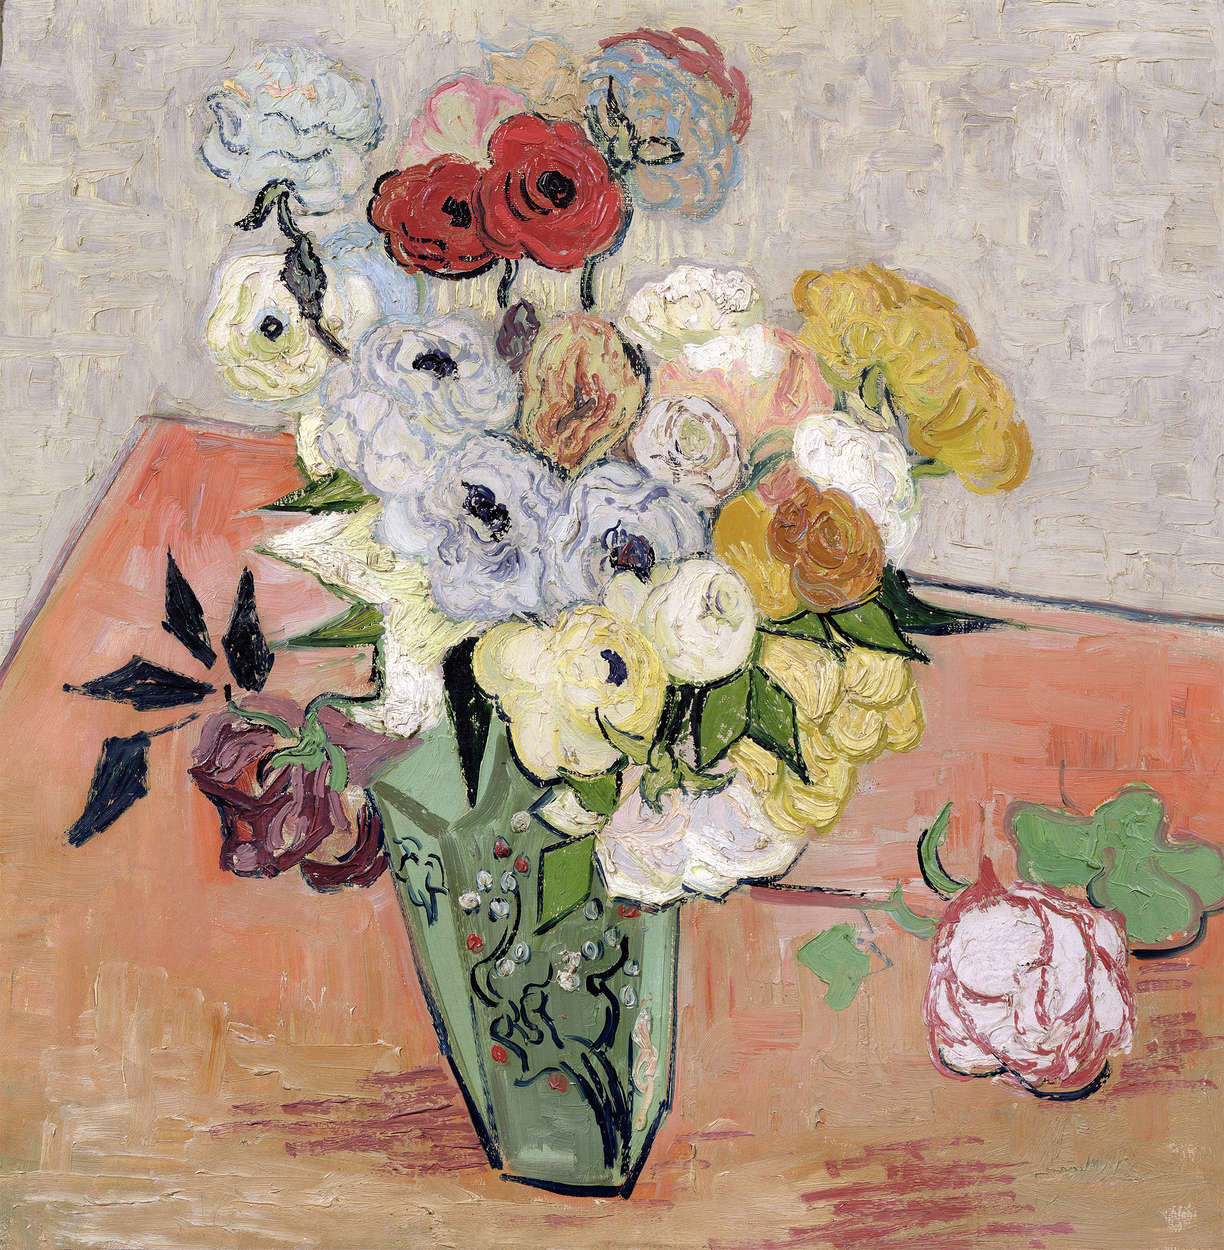             Papier peint "Nature morte au vase japonaisRoses et anémones" de Vincent van Gogh
        